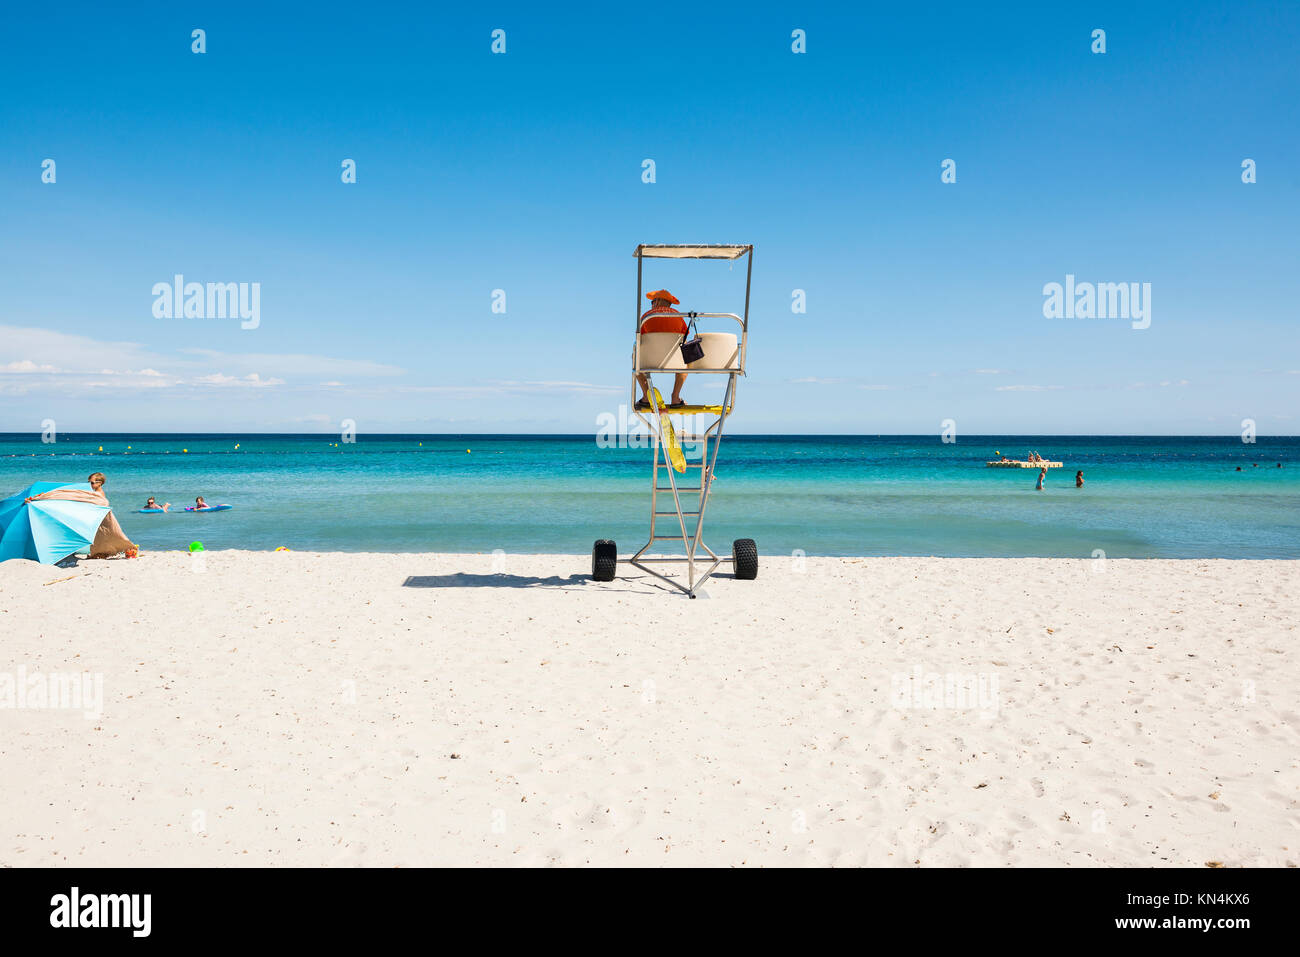 Beachguard presso la spiaggia di sabbia, la Plage des Salins, Saint Tropez, Var, Cote d' Azur, sud della Francia, Francia Foto Stock